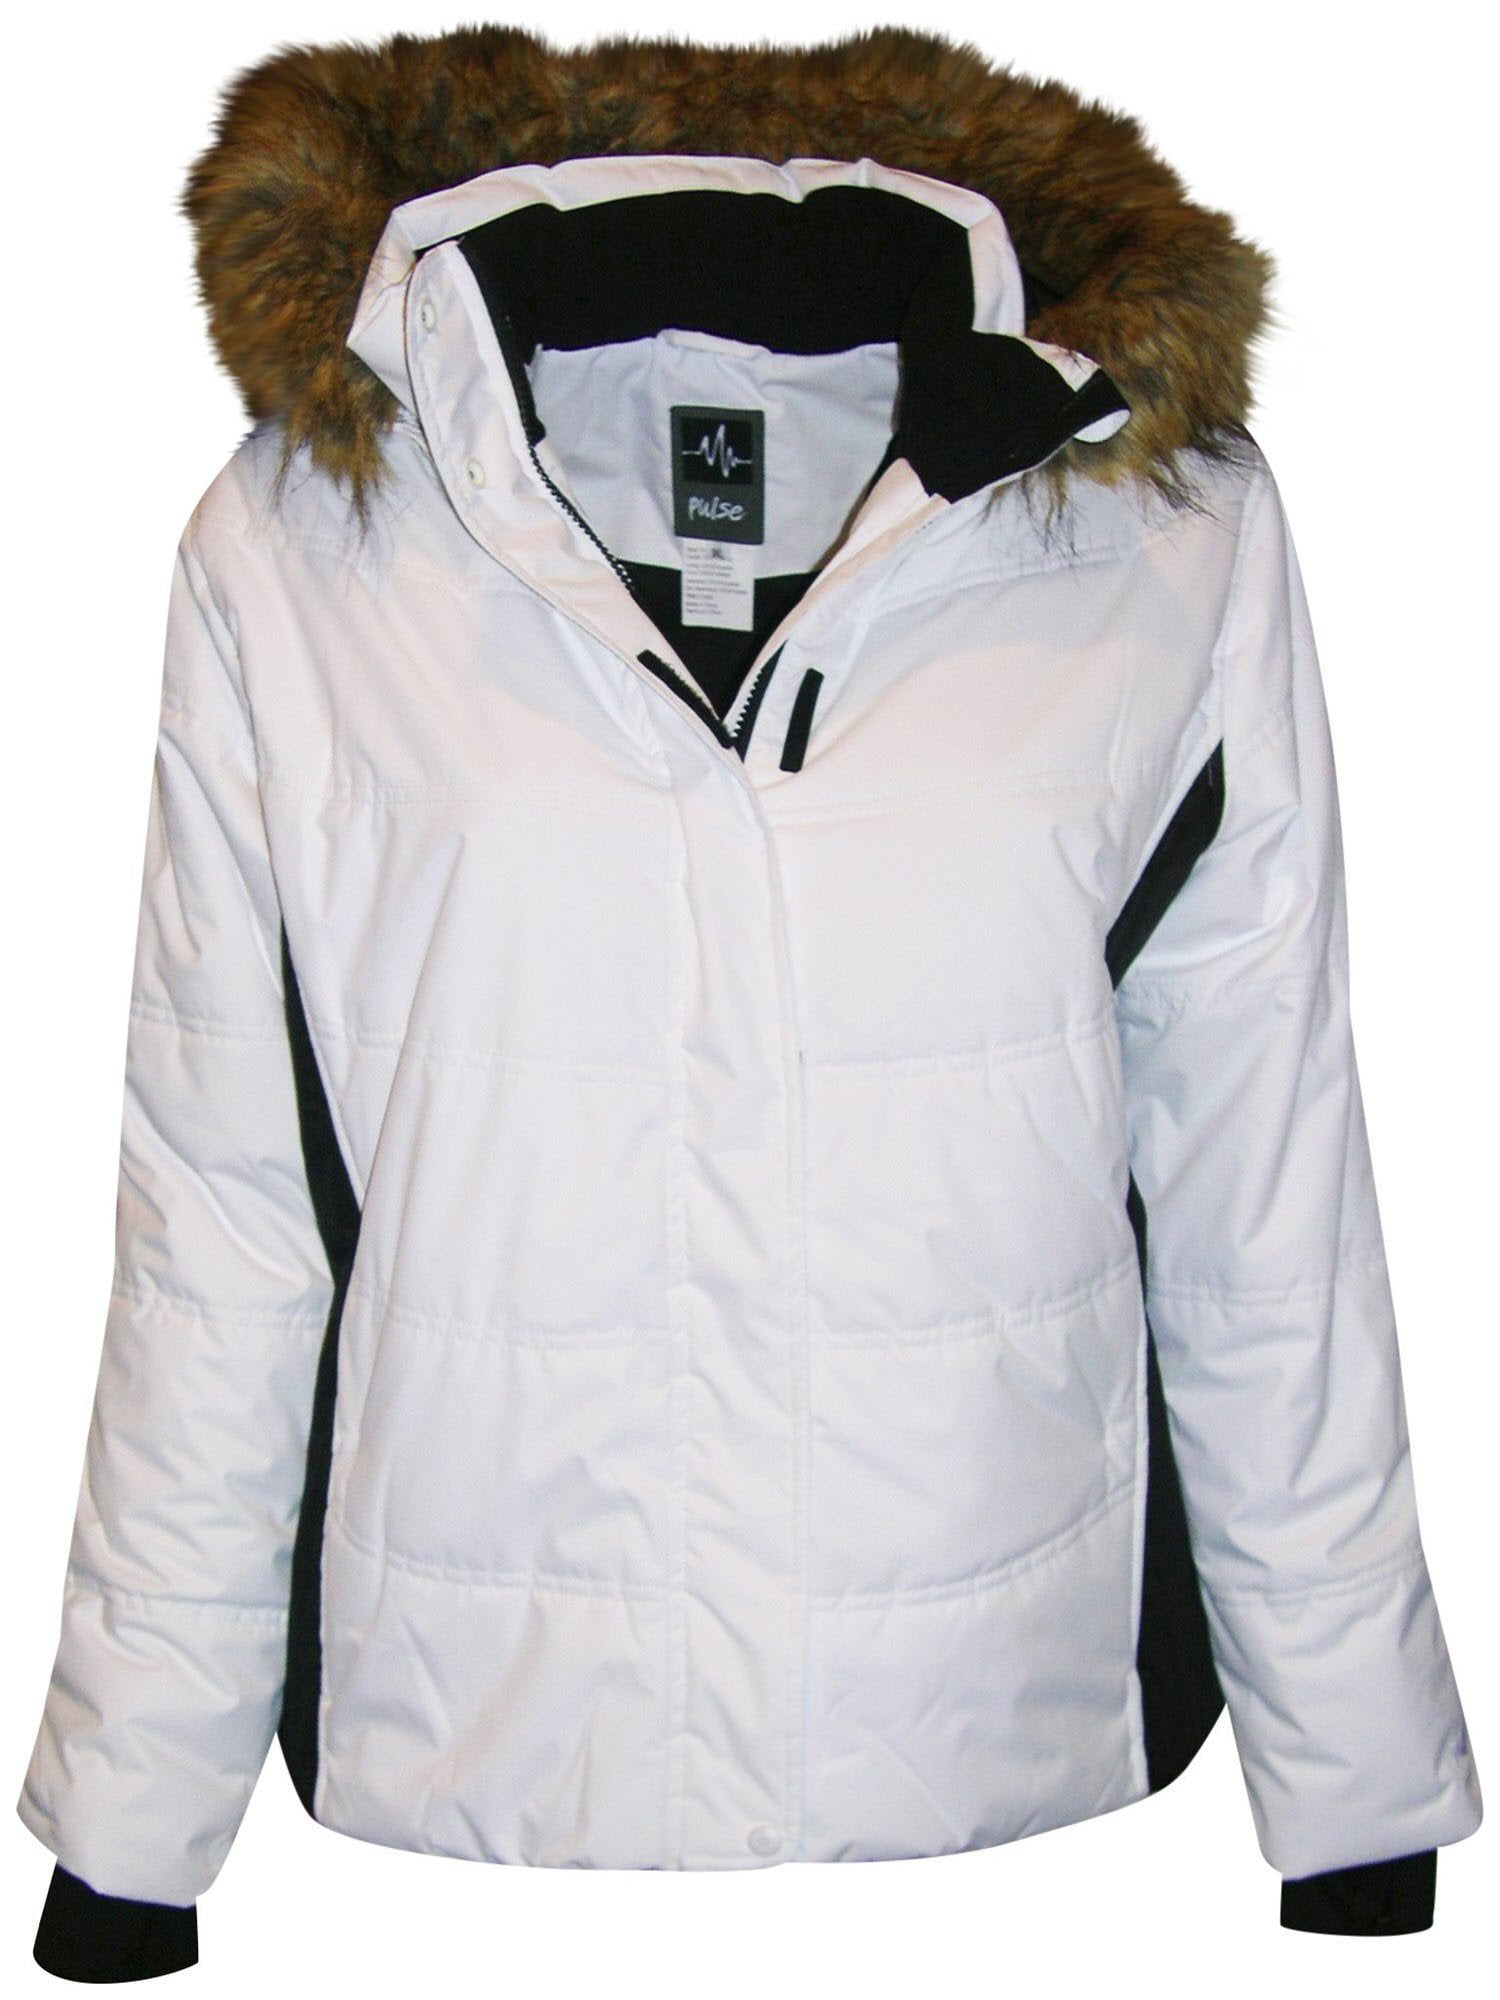 size 22 ski jacket